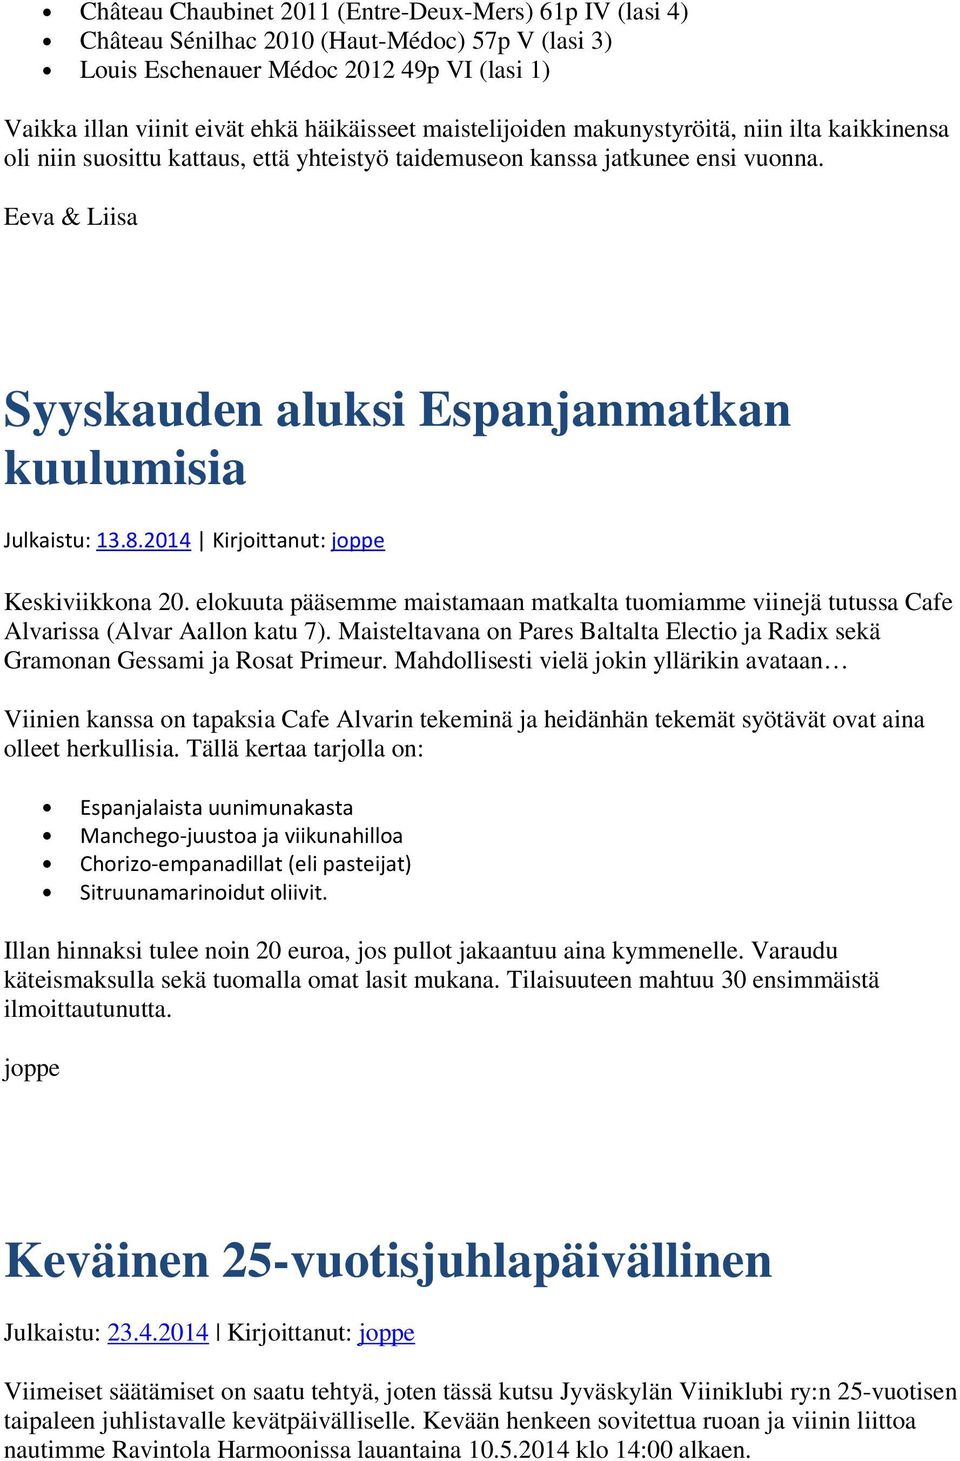 Eeva & Liisa Syyskauden aluksi Espanjanmatkan kuulumisia Julkaistu: 13.8.2014 Kirjoittanut: joppe Keskiviikkona 20.